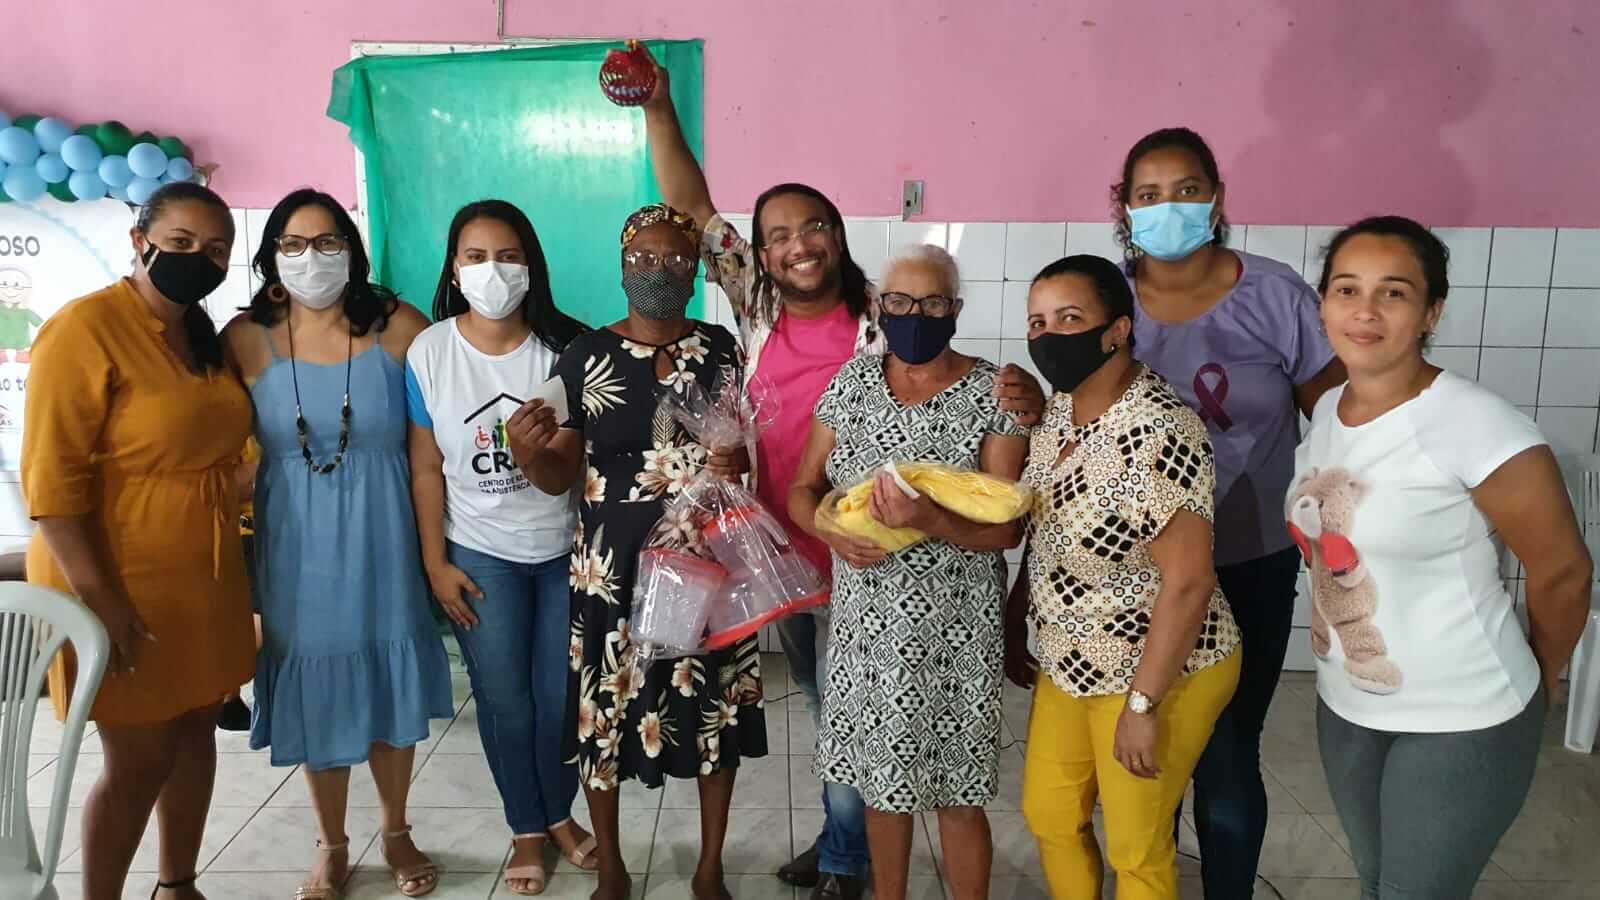 Mês do idoso é celebrado em Guaratinga com a retomada de ações presenciais após pandemia da Covid-19 91